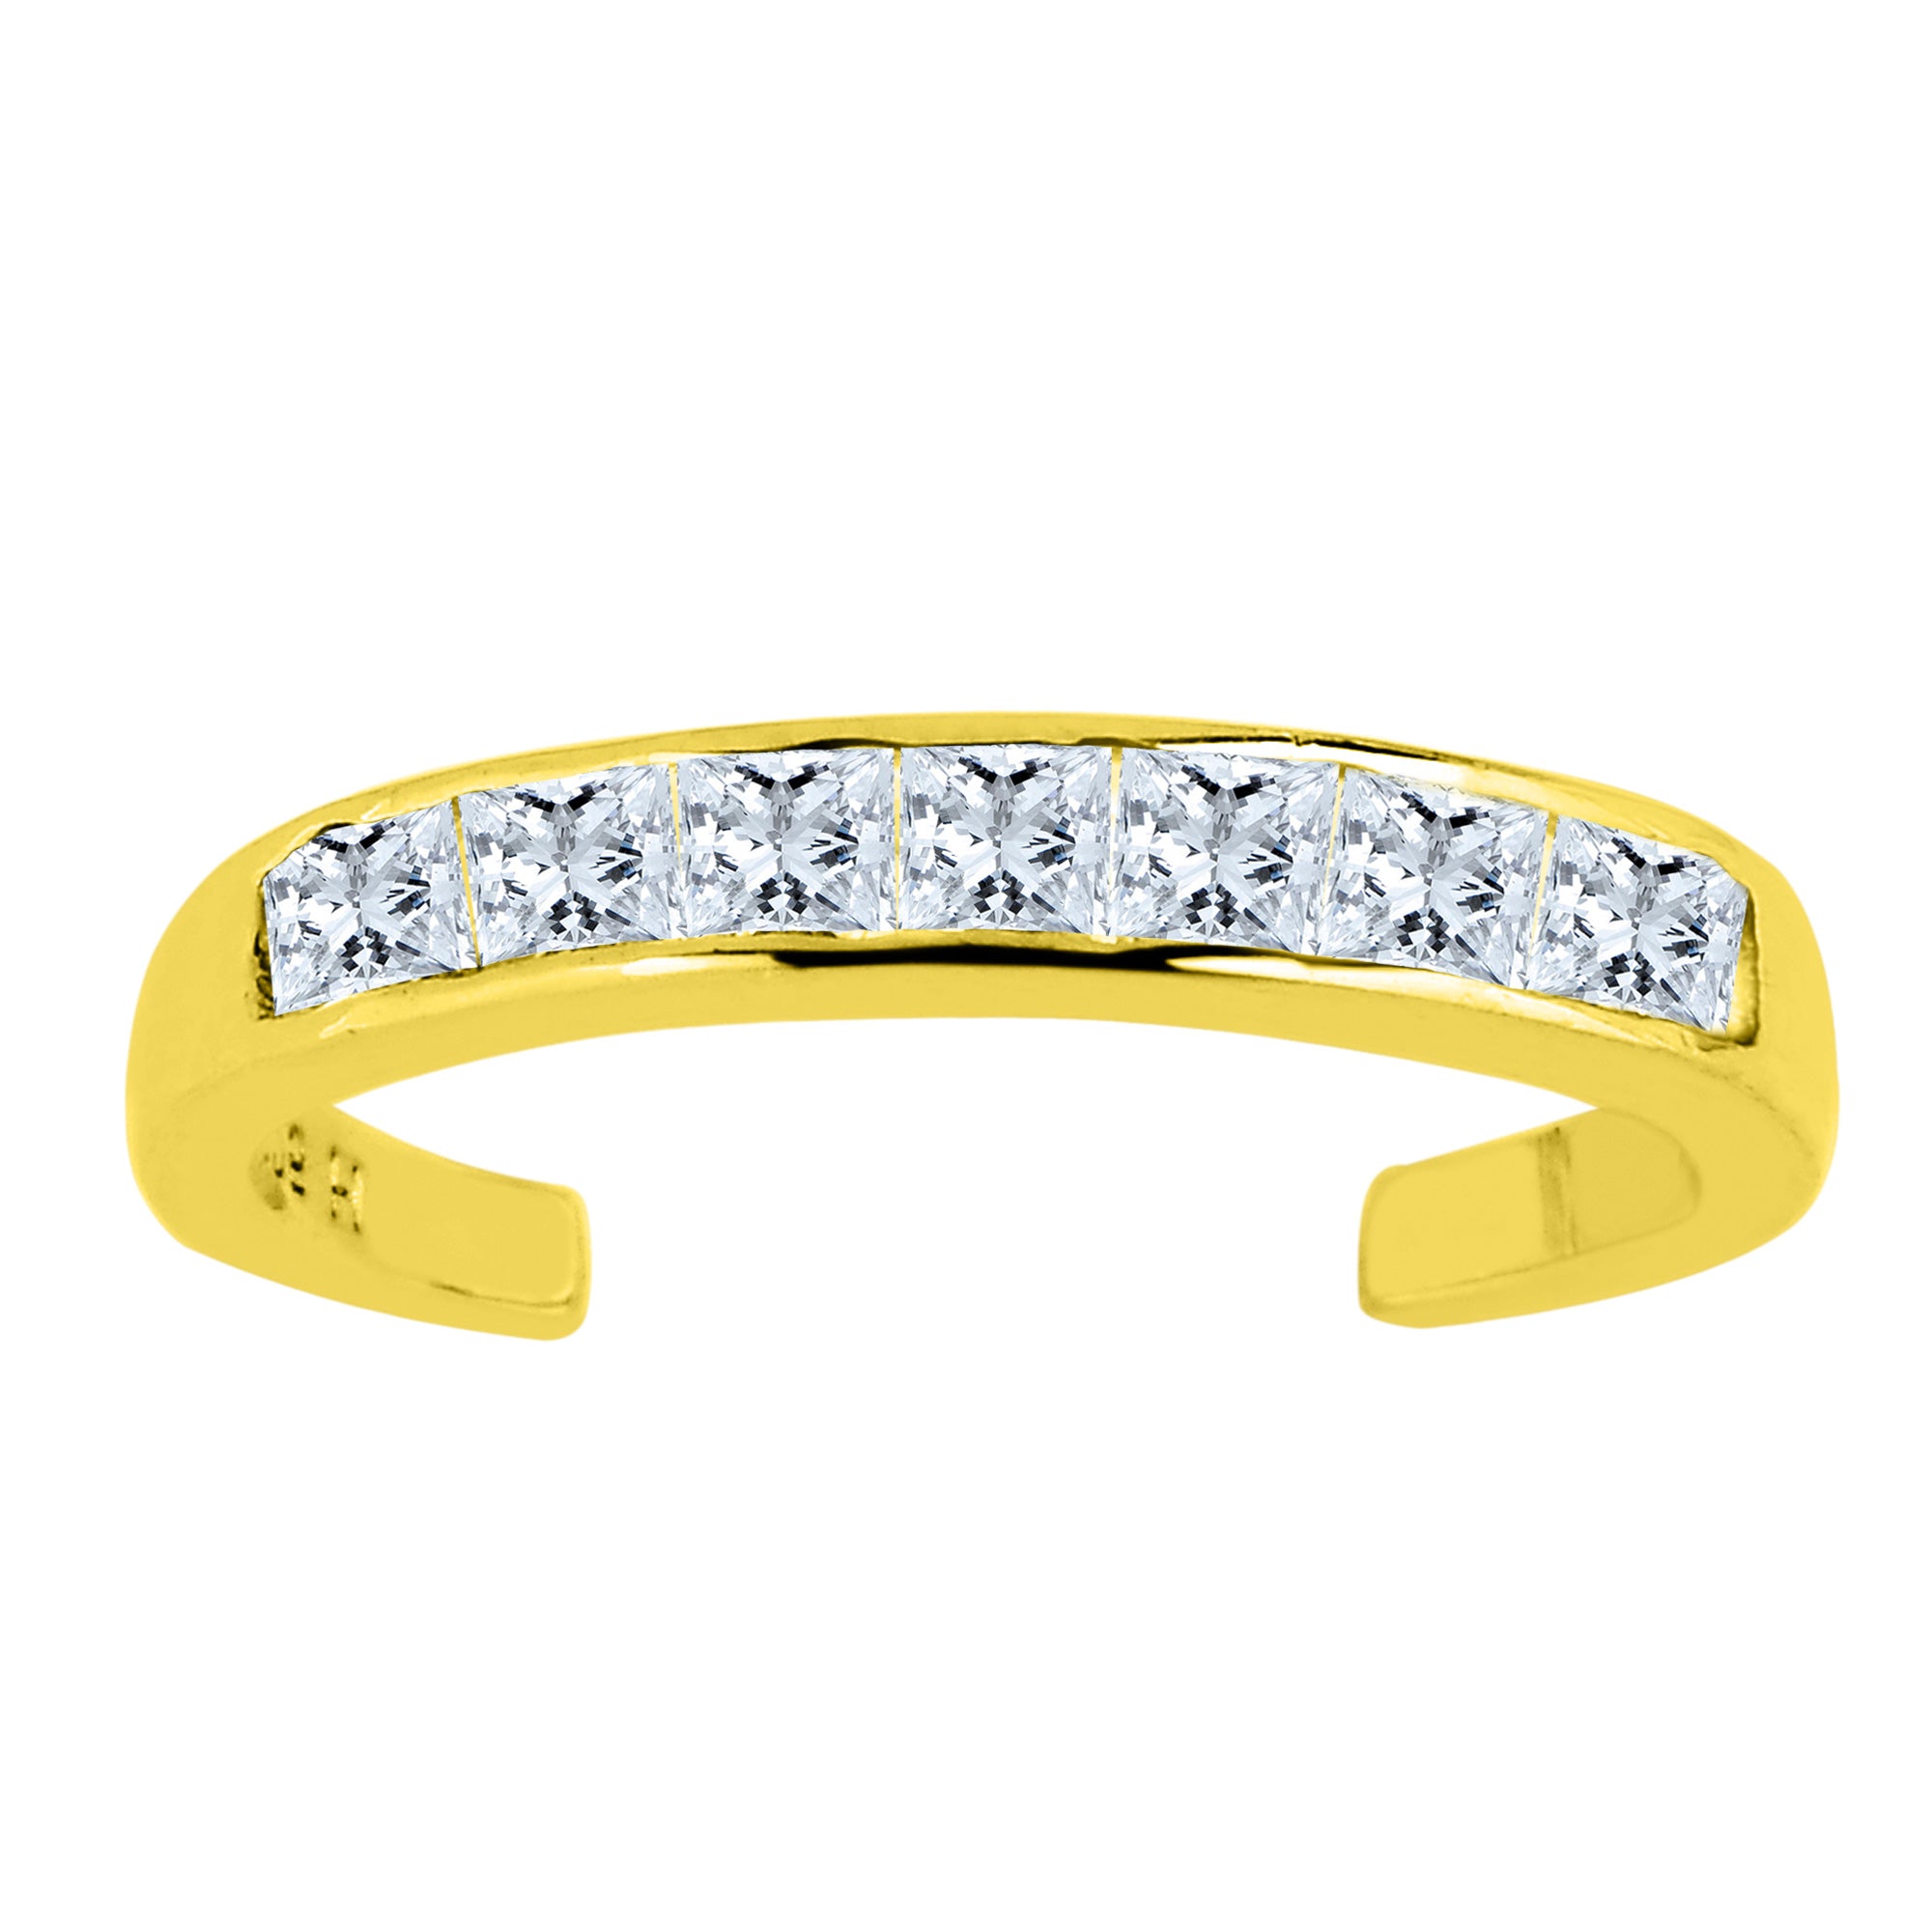 Conjunto de canales de piedras CZ de oro amarillo de 14 quilates, anillo ajustable para el dedo del pie, joyería fina de diseño de 3 mm para hombres y mujeres